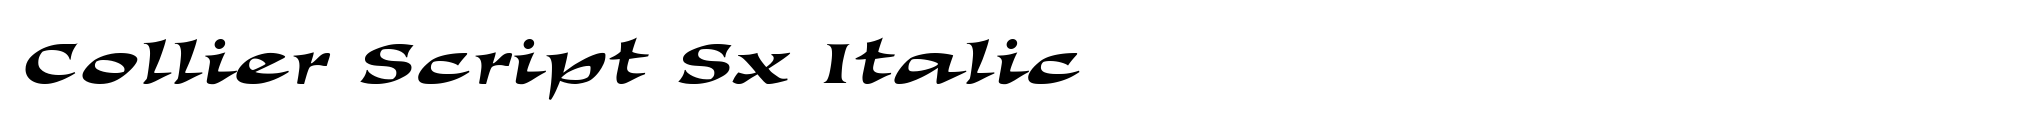 Collier Script Sx Italic image